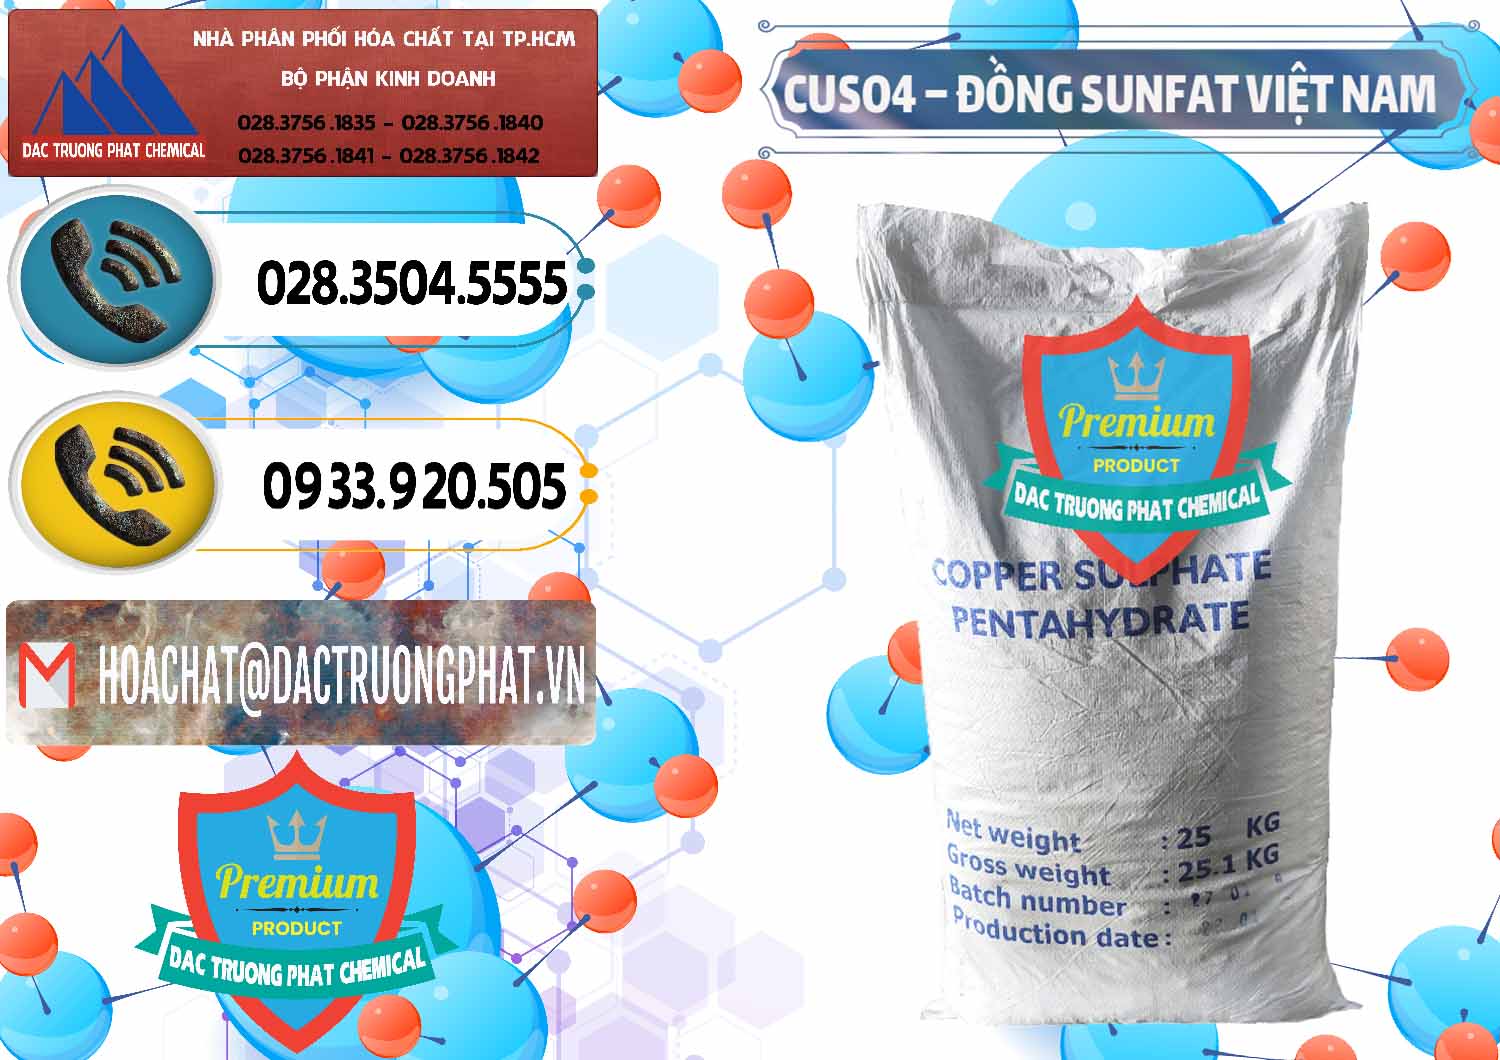 Chuyên cung cấp và kinh doanh CuSO4 – Đồng Sunfat Dạng Bột Việt Nam - 0196 - Chuyên kinh doanh và cung cấp hóa chất tại TP.HCM - hoachatdetnhuom.vn